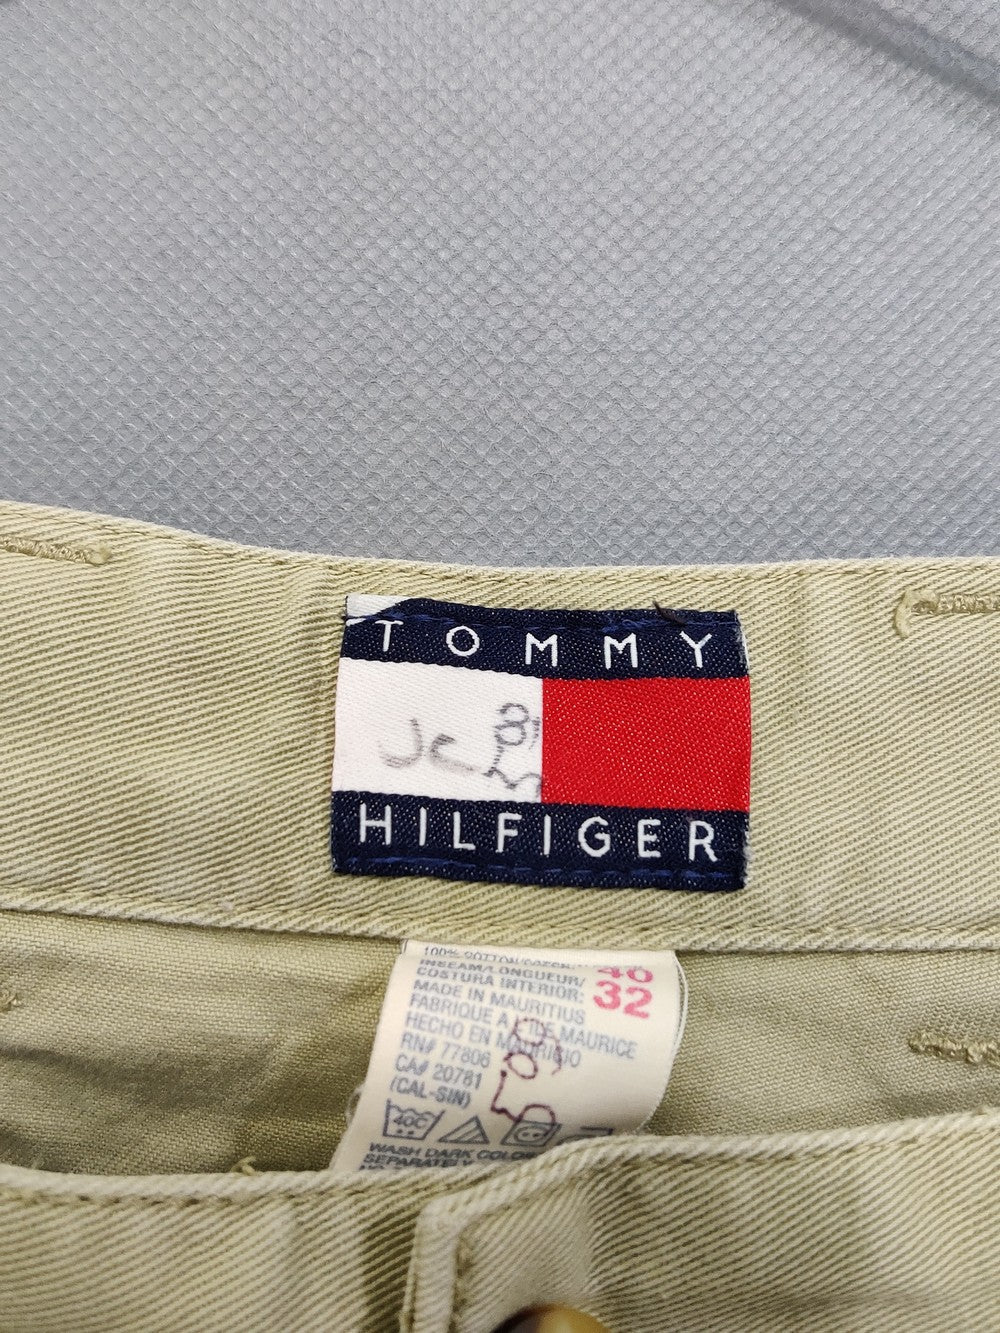 Tommy Hilfiger Branded Original Cotton Dress Pant For Men